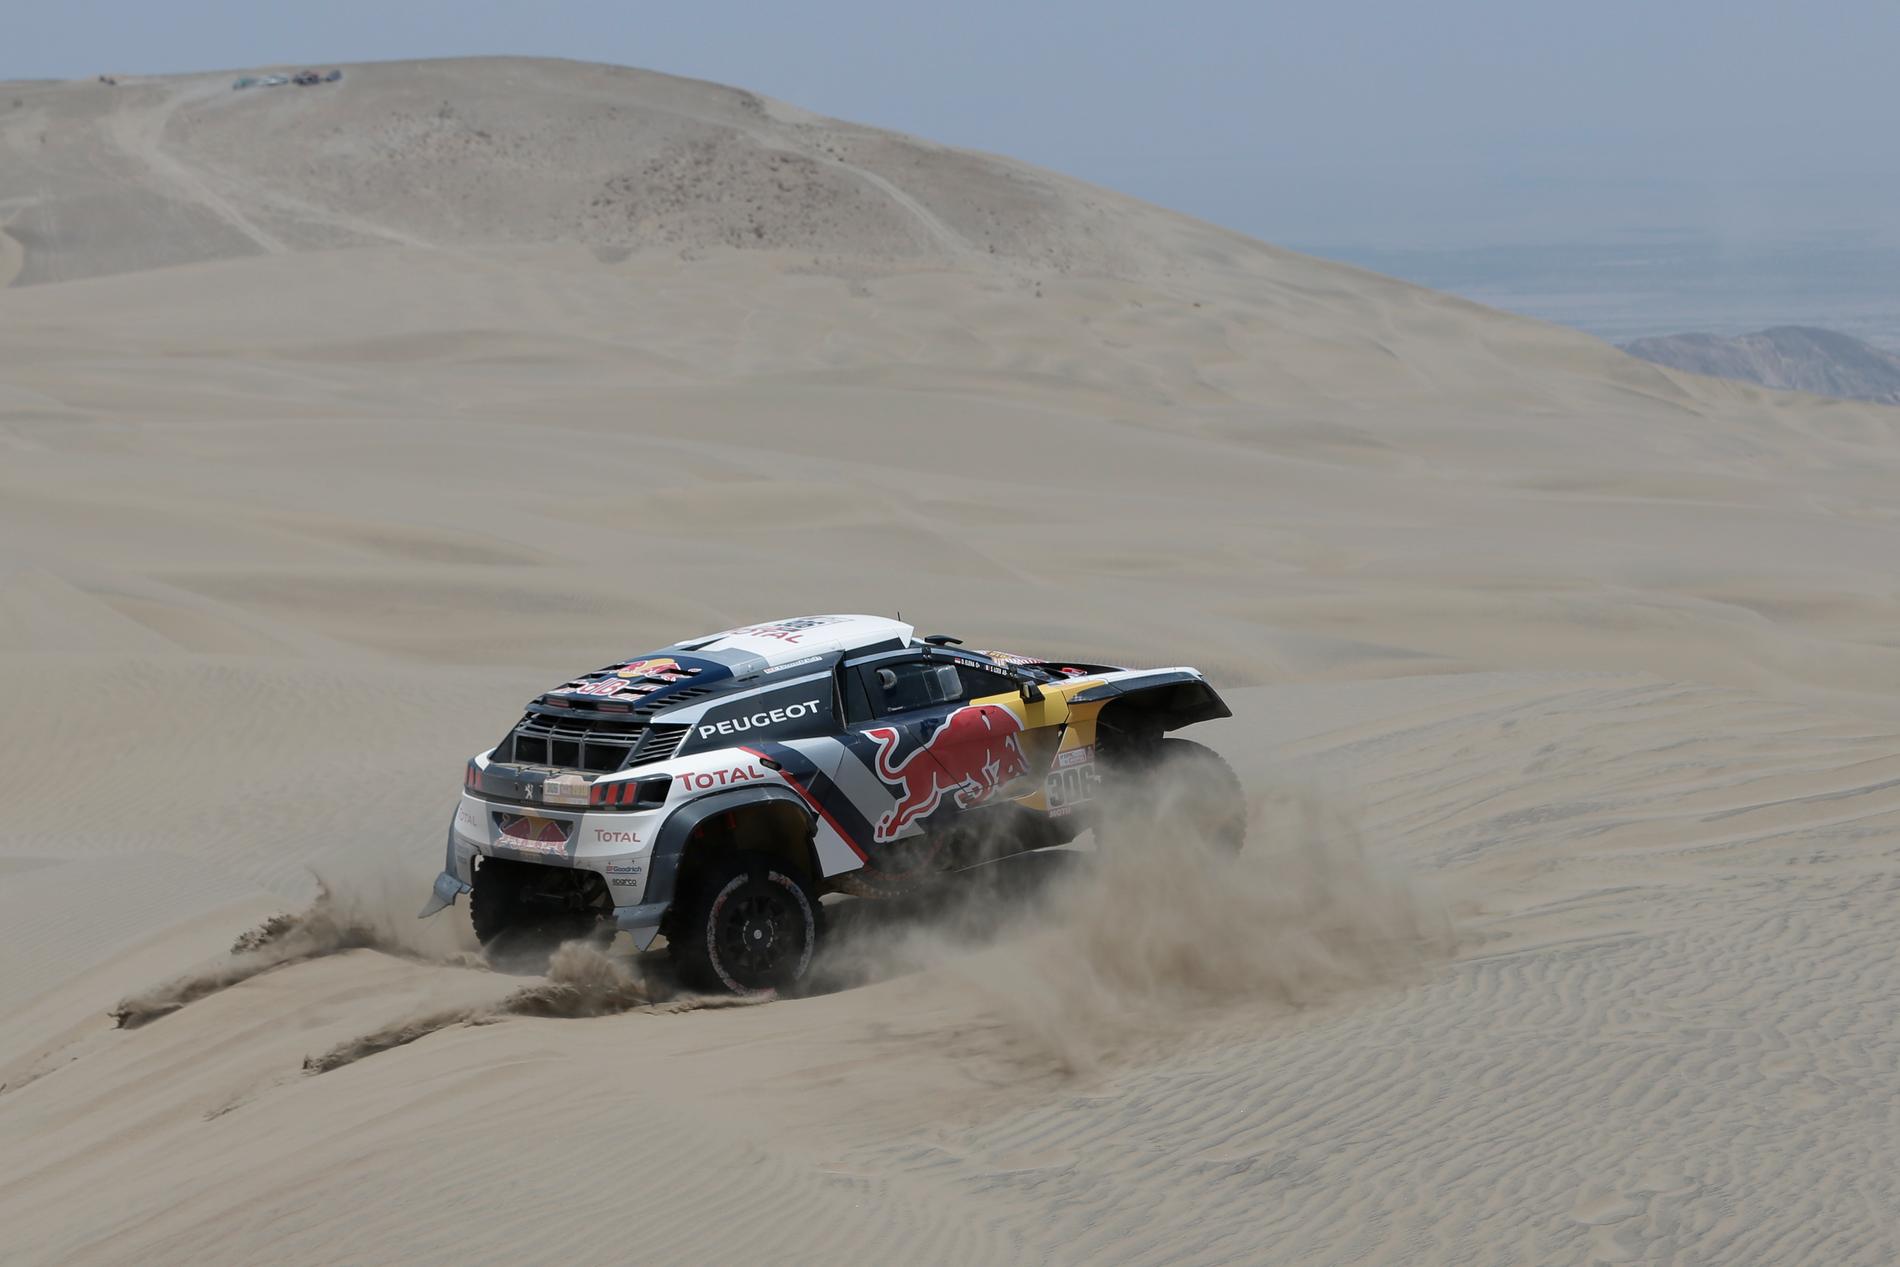 Tuffa veckor för Sebastien Loeb som kör Rally Dakar innan premiären av WRC med Hyundai